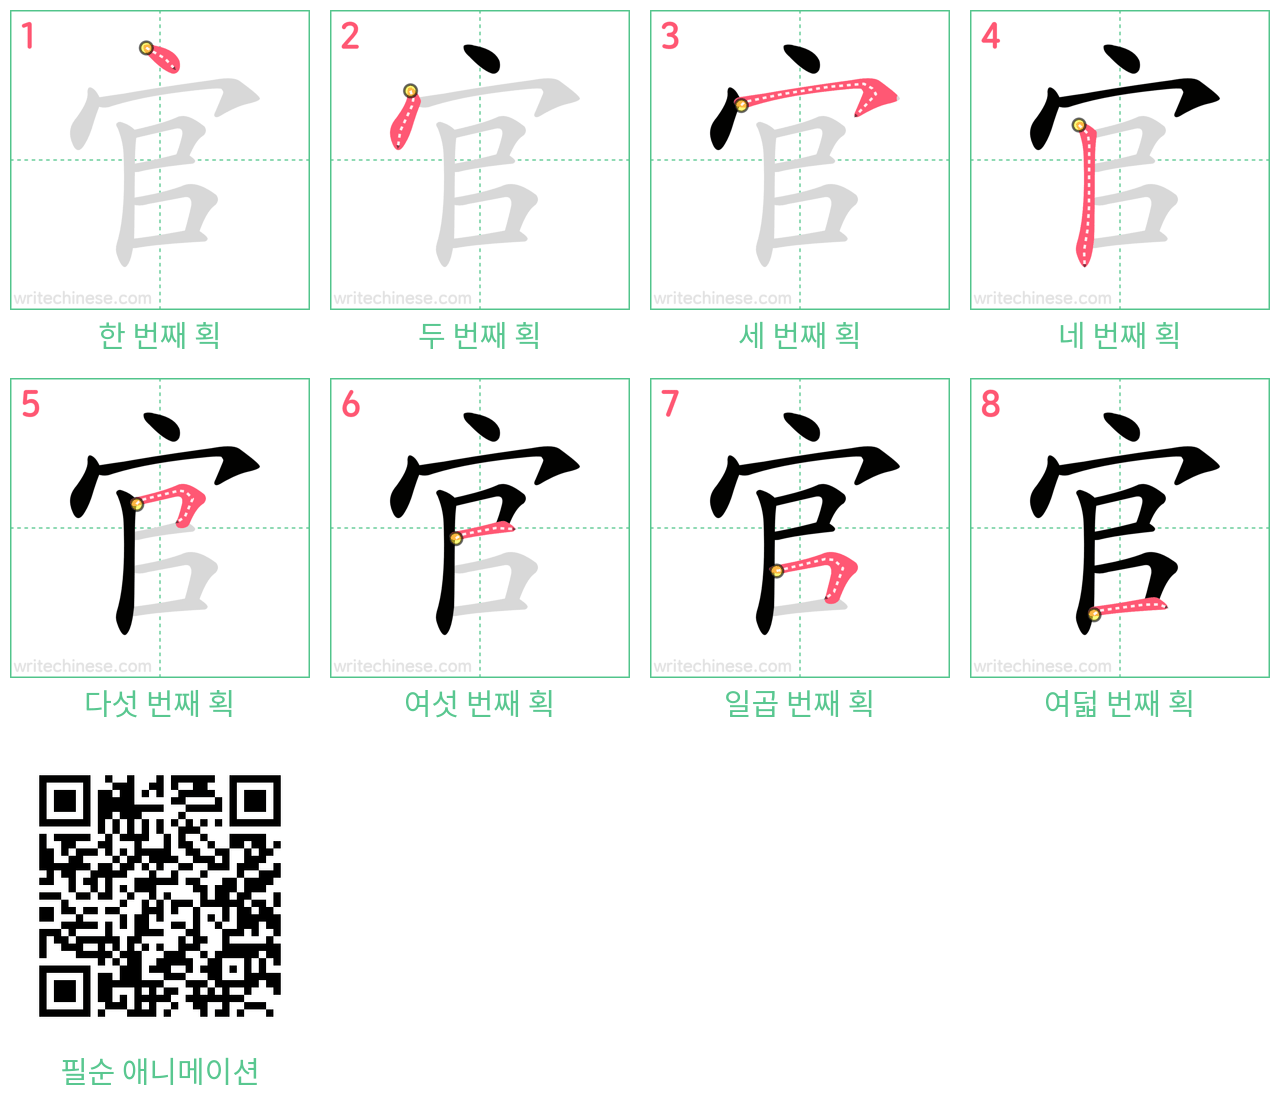 官 step-by-step stroke order diagrams